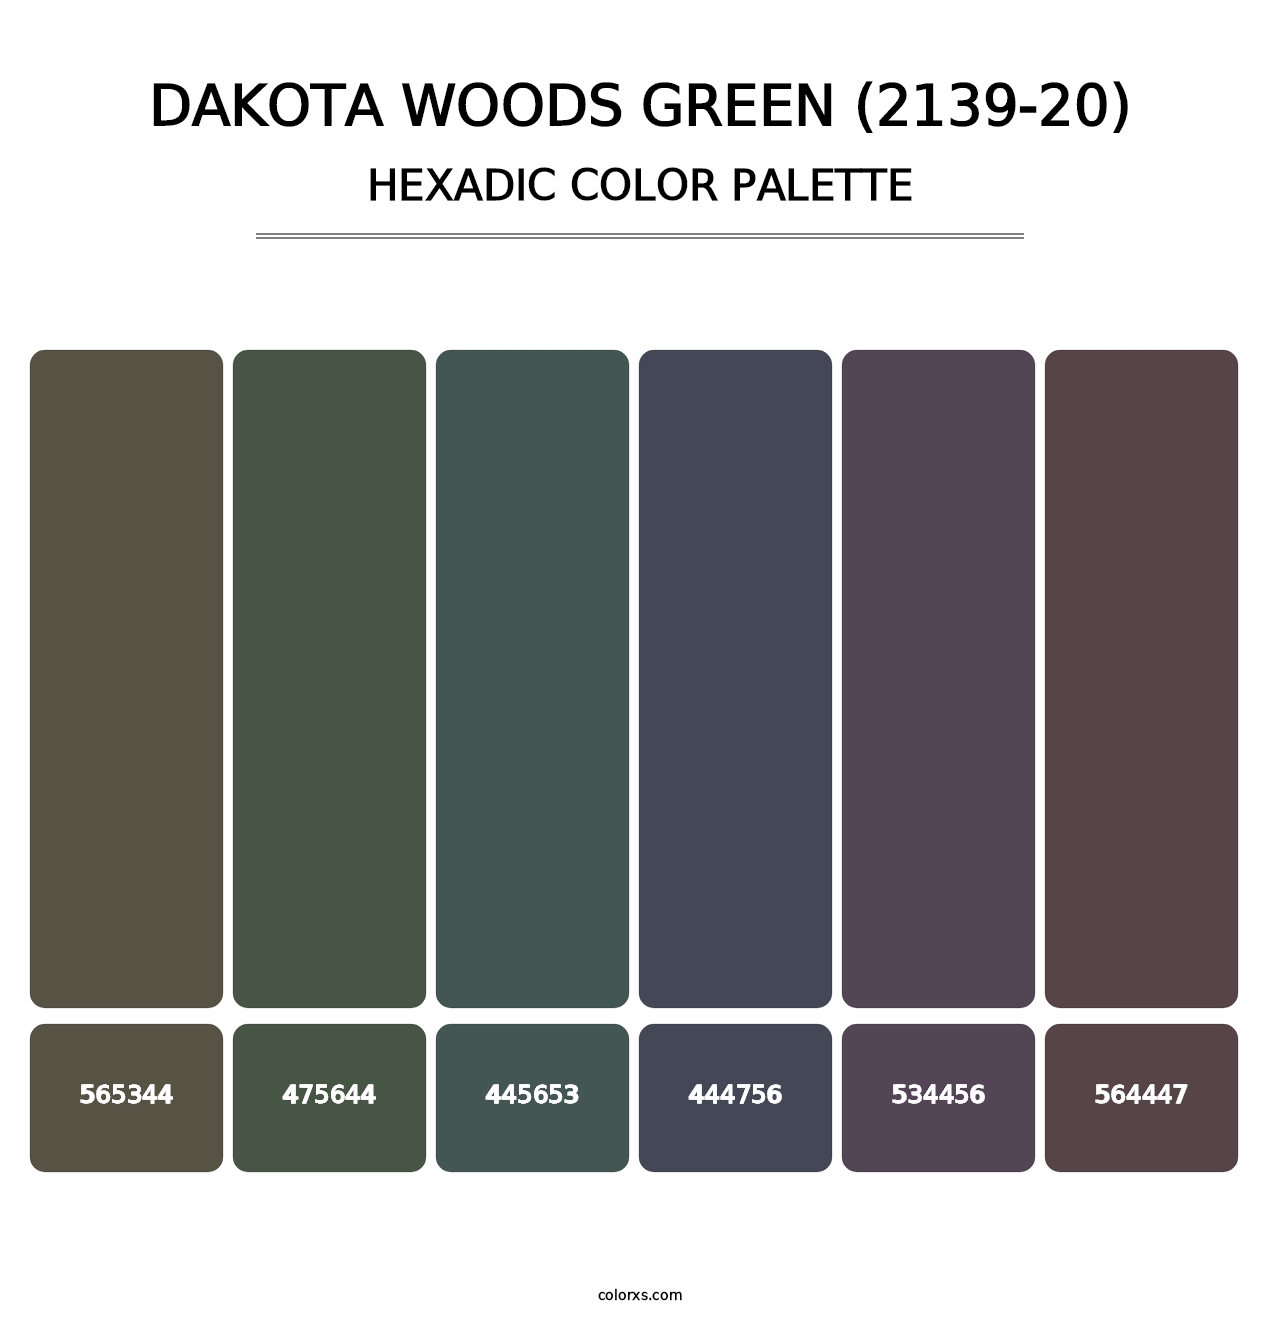 Dakota Woods Green (2139-20) - Hexadic Color Palette